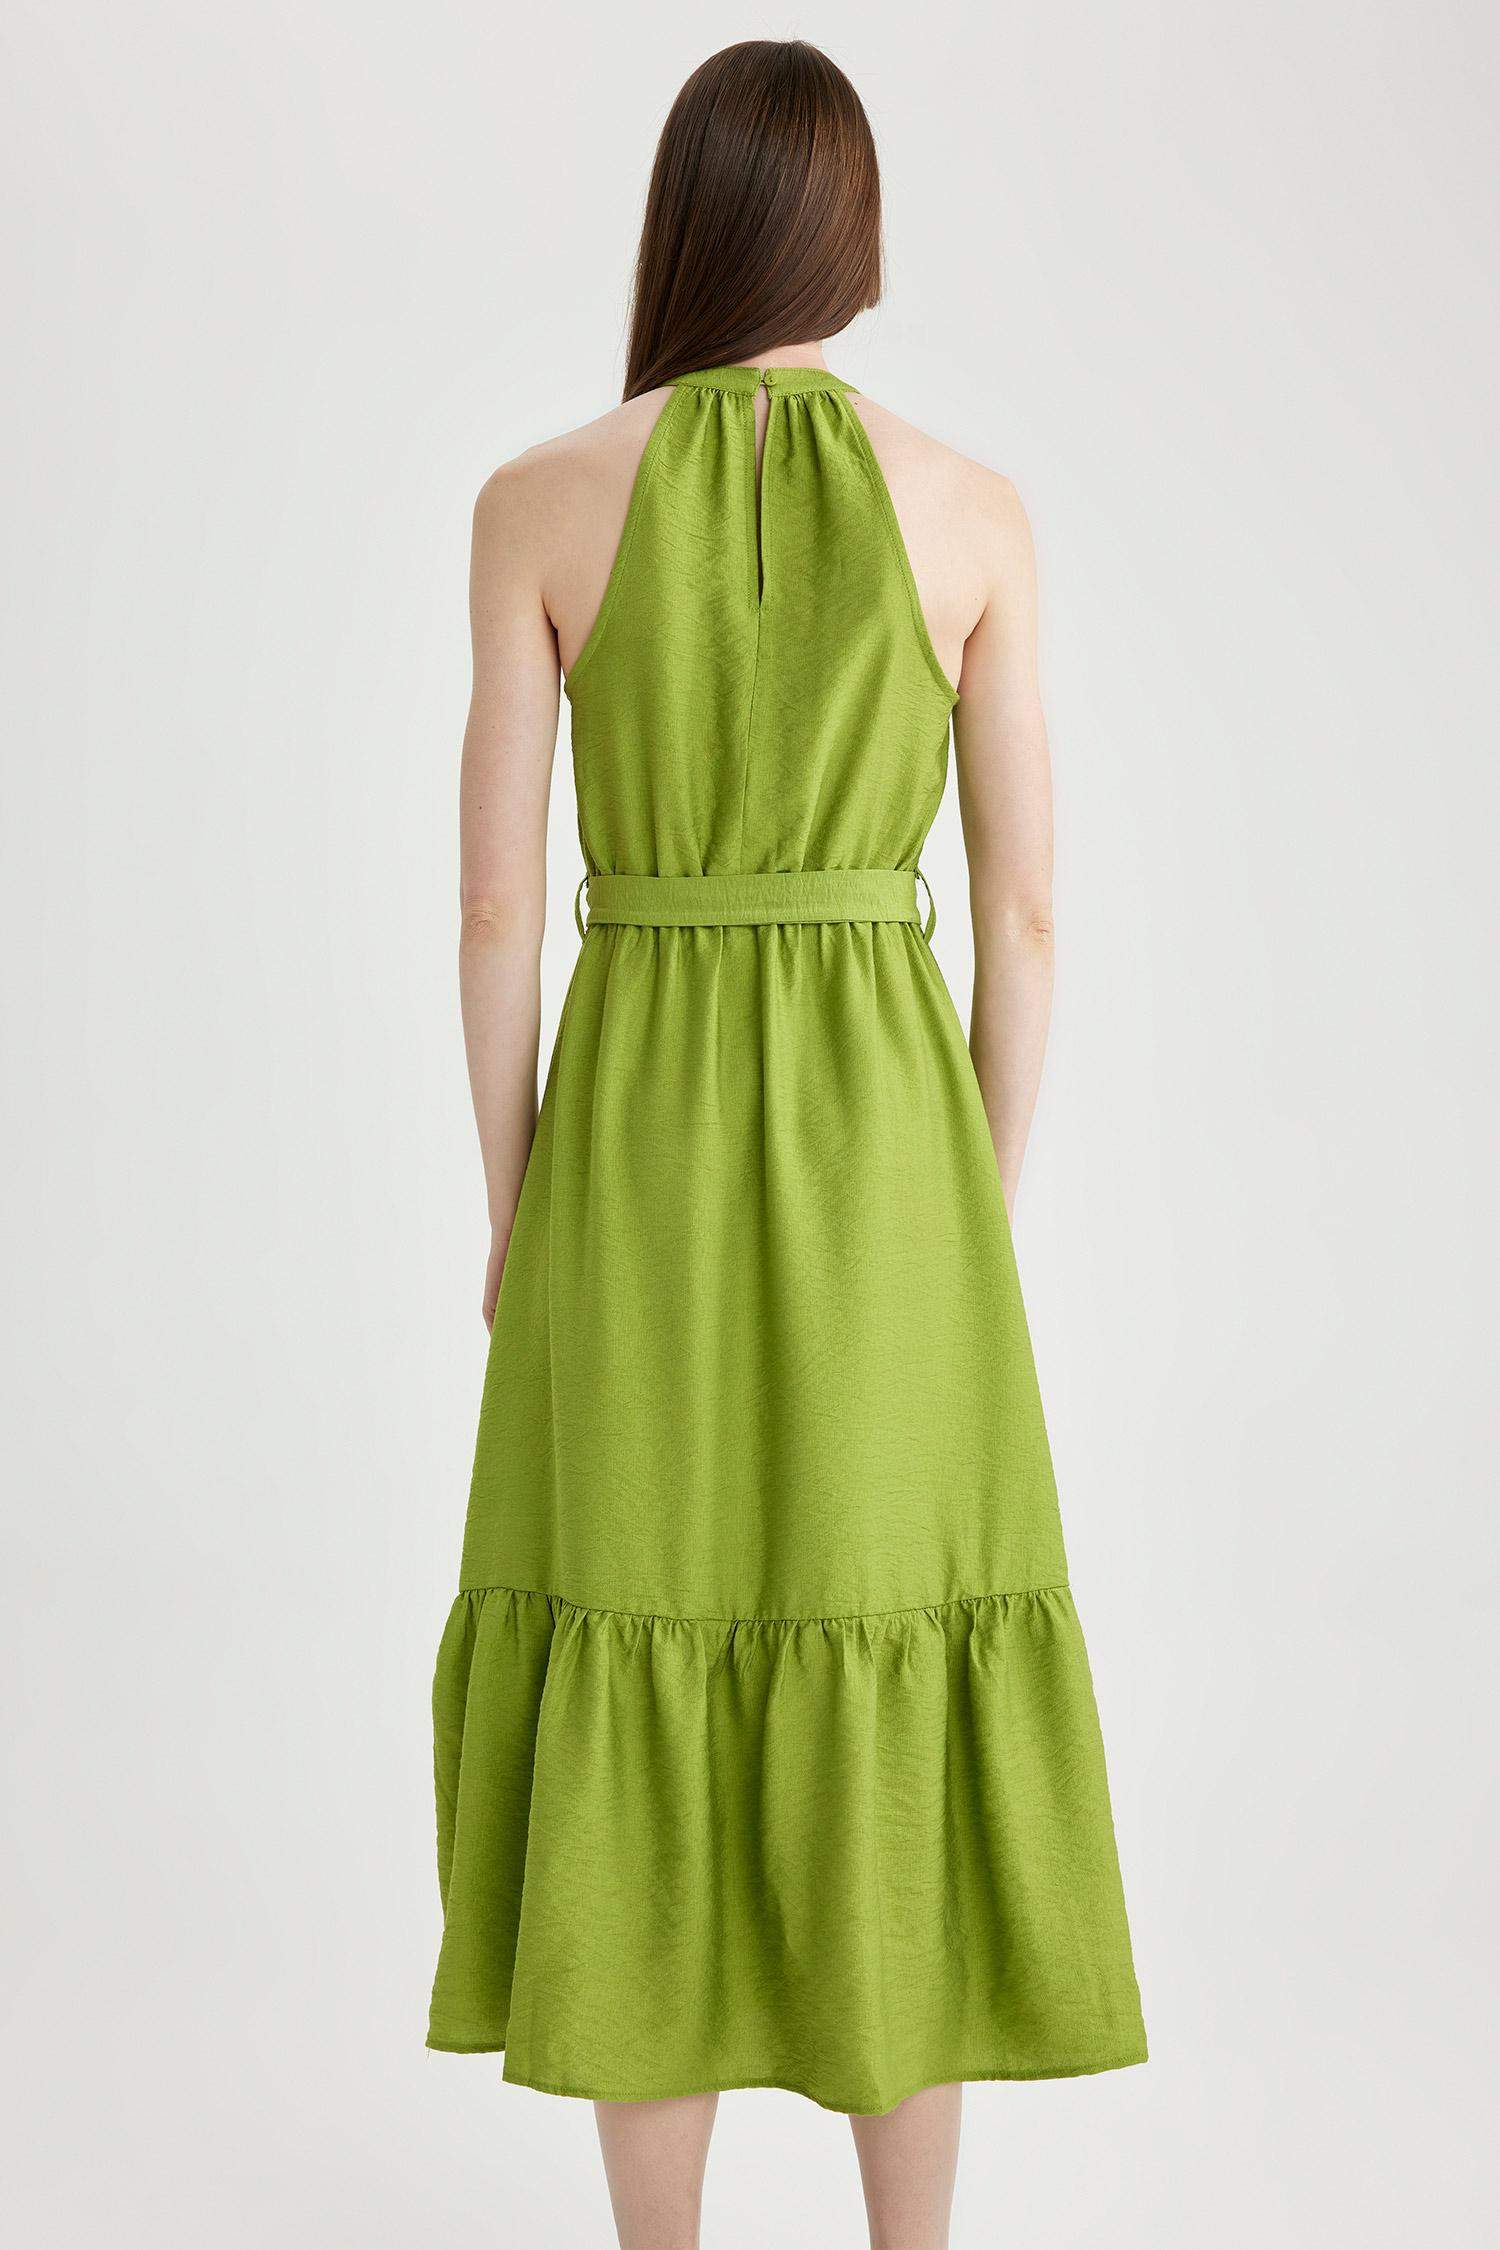 Green WOMAN Crossneck Linen Look Maxi Short Sleeve Woven Dress 2818836 ...